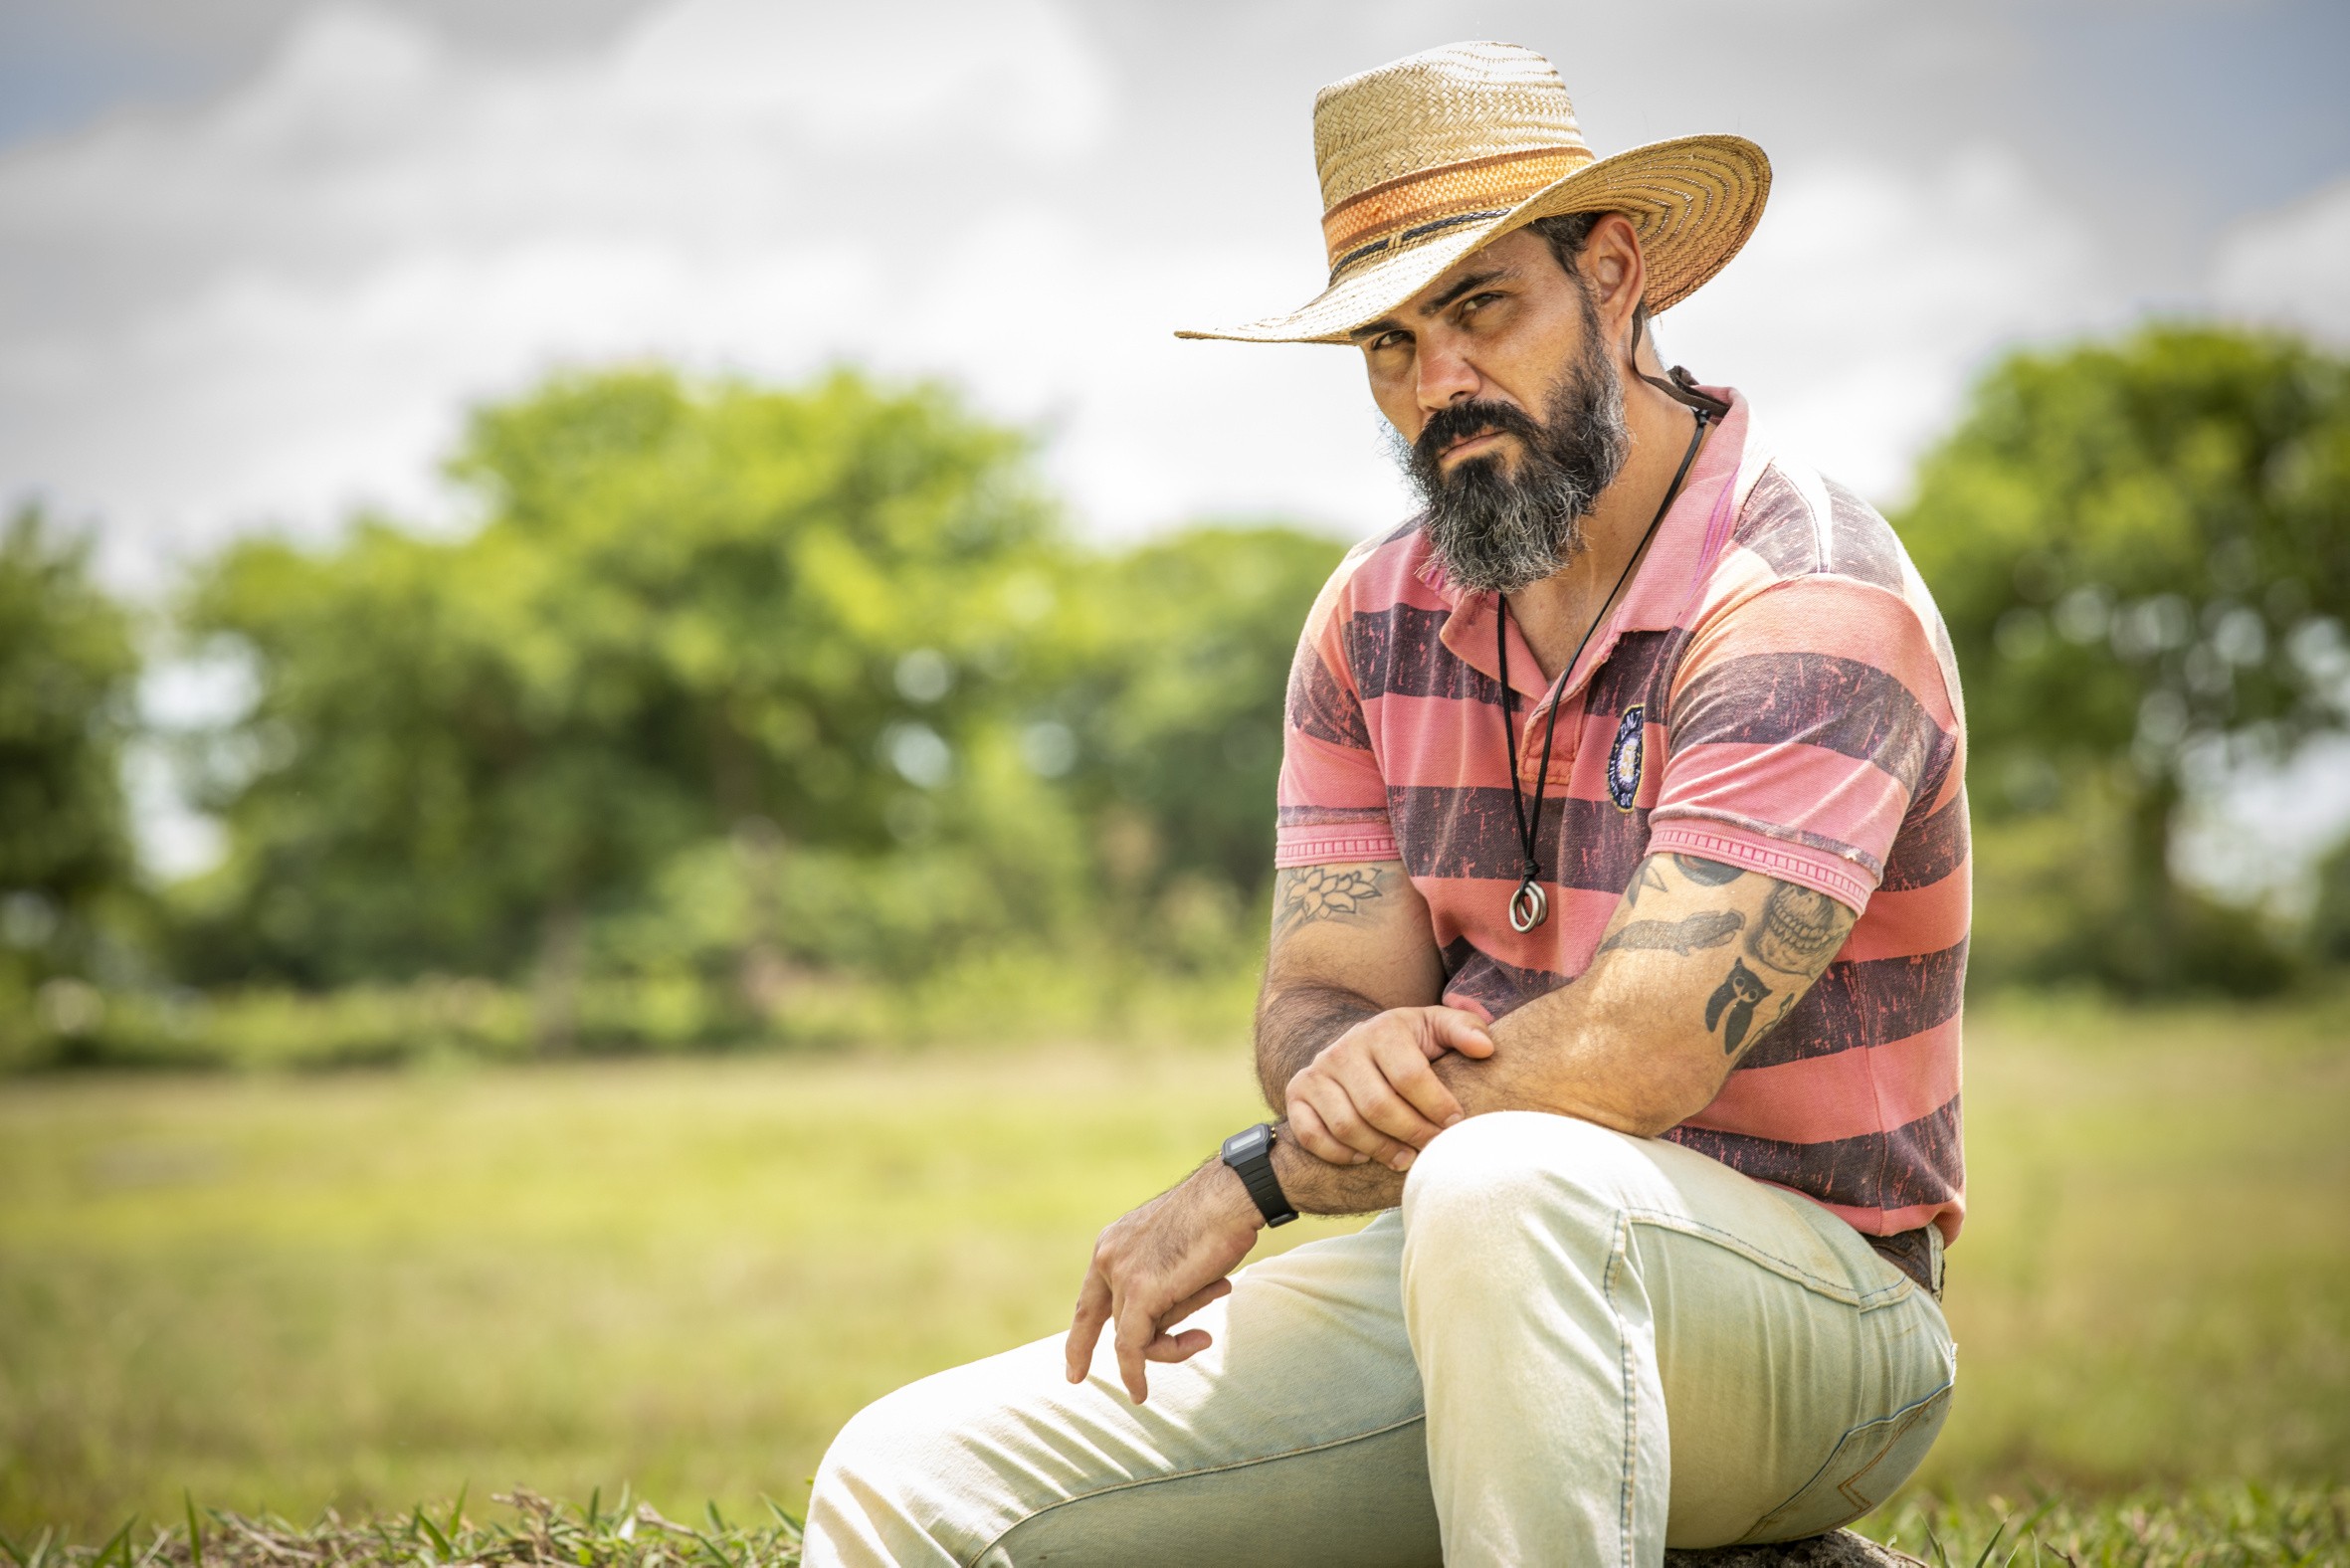 Juliano Cazarré sobre o Alcides de Pantanal: "Quer vingança" - Quem |  Pantanal